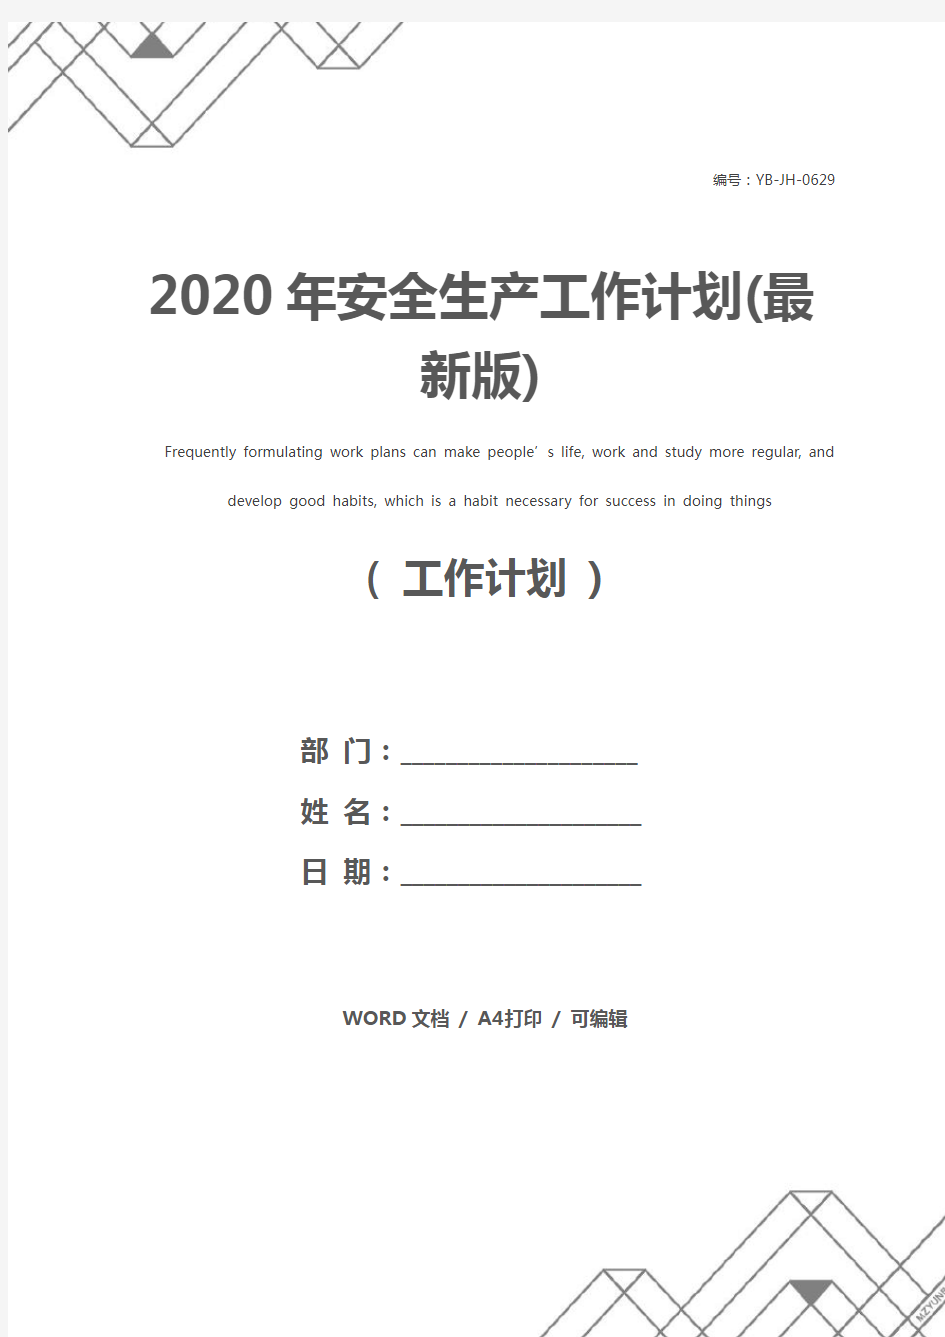 2020年安全生产工作计划(最新版)